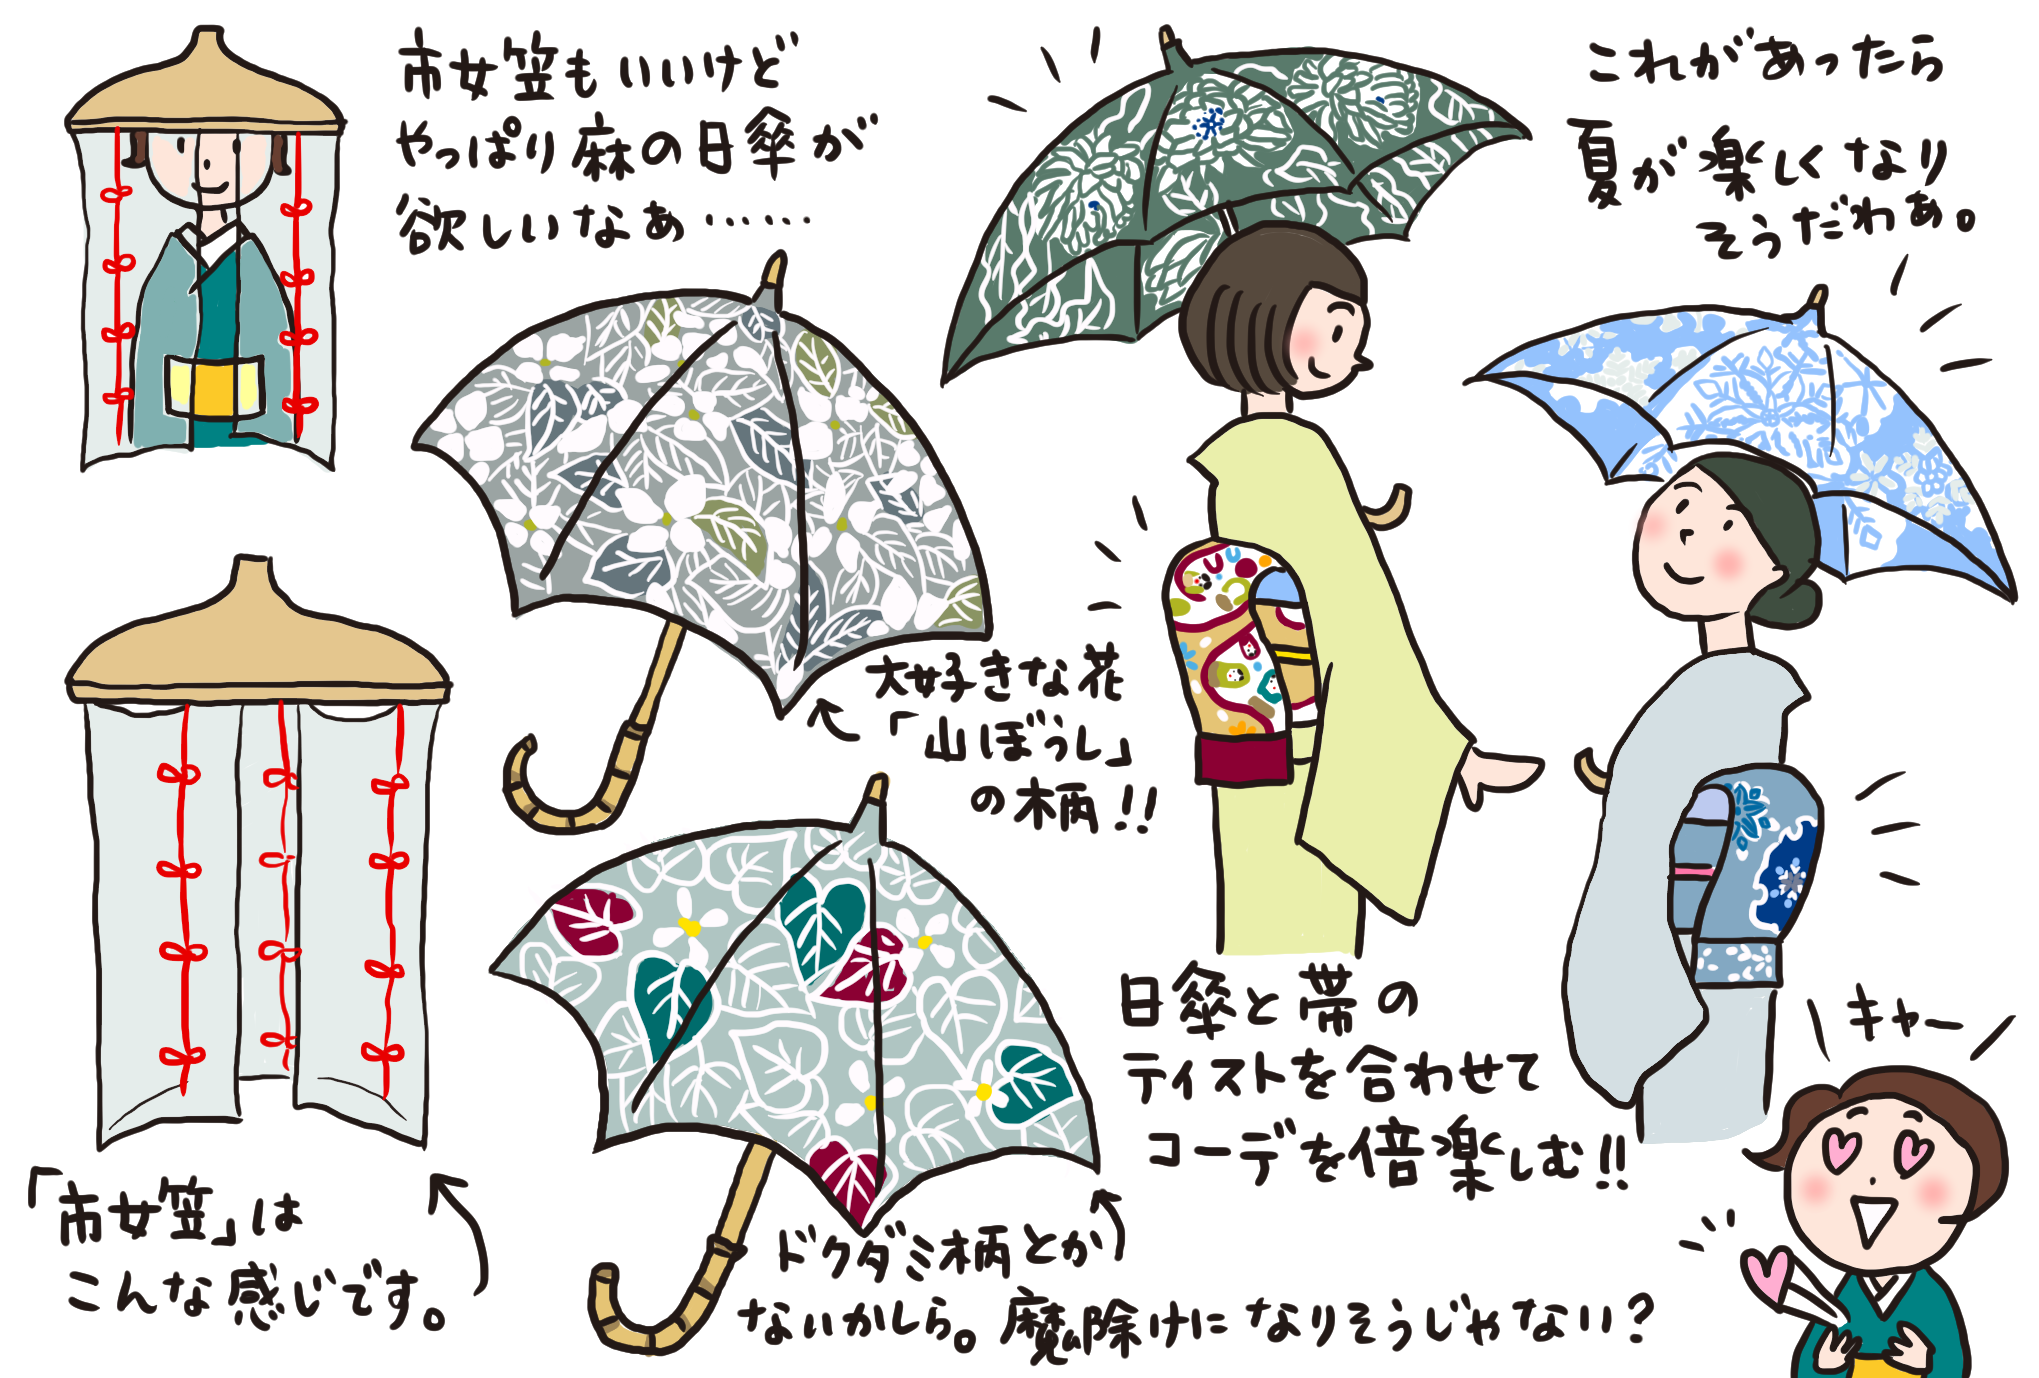 日傘をさして おでかけをもっと楽しく きくちいまが 今考えるきもののこと 着物 和 京都に関する情報ならきものと